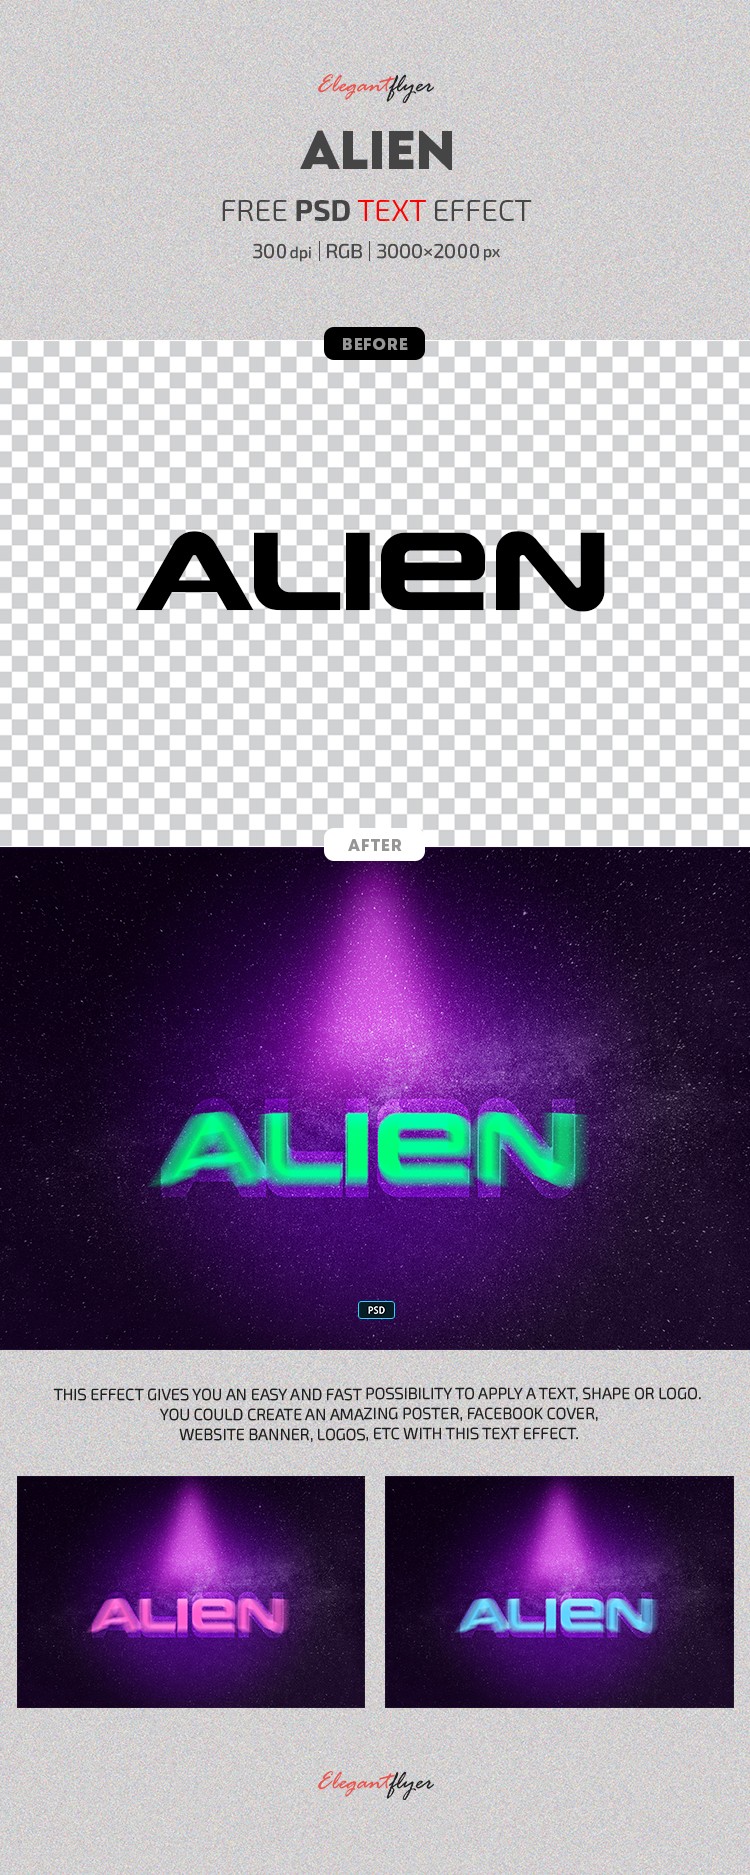 Alien Text Effect by ElegantFlyer